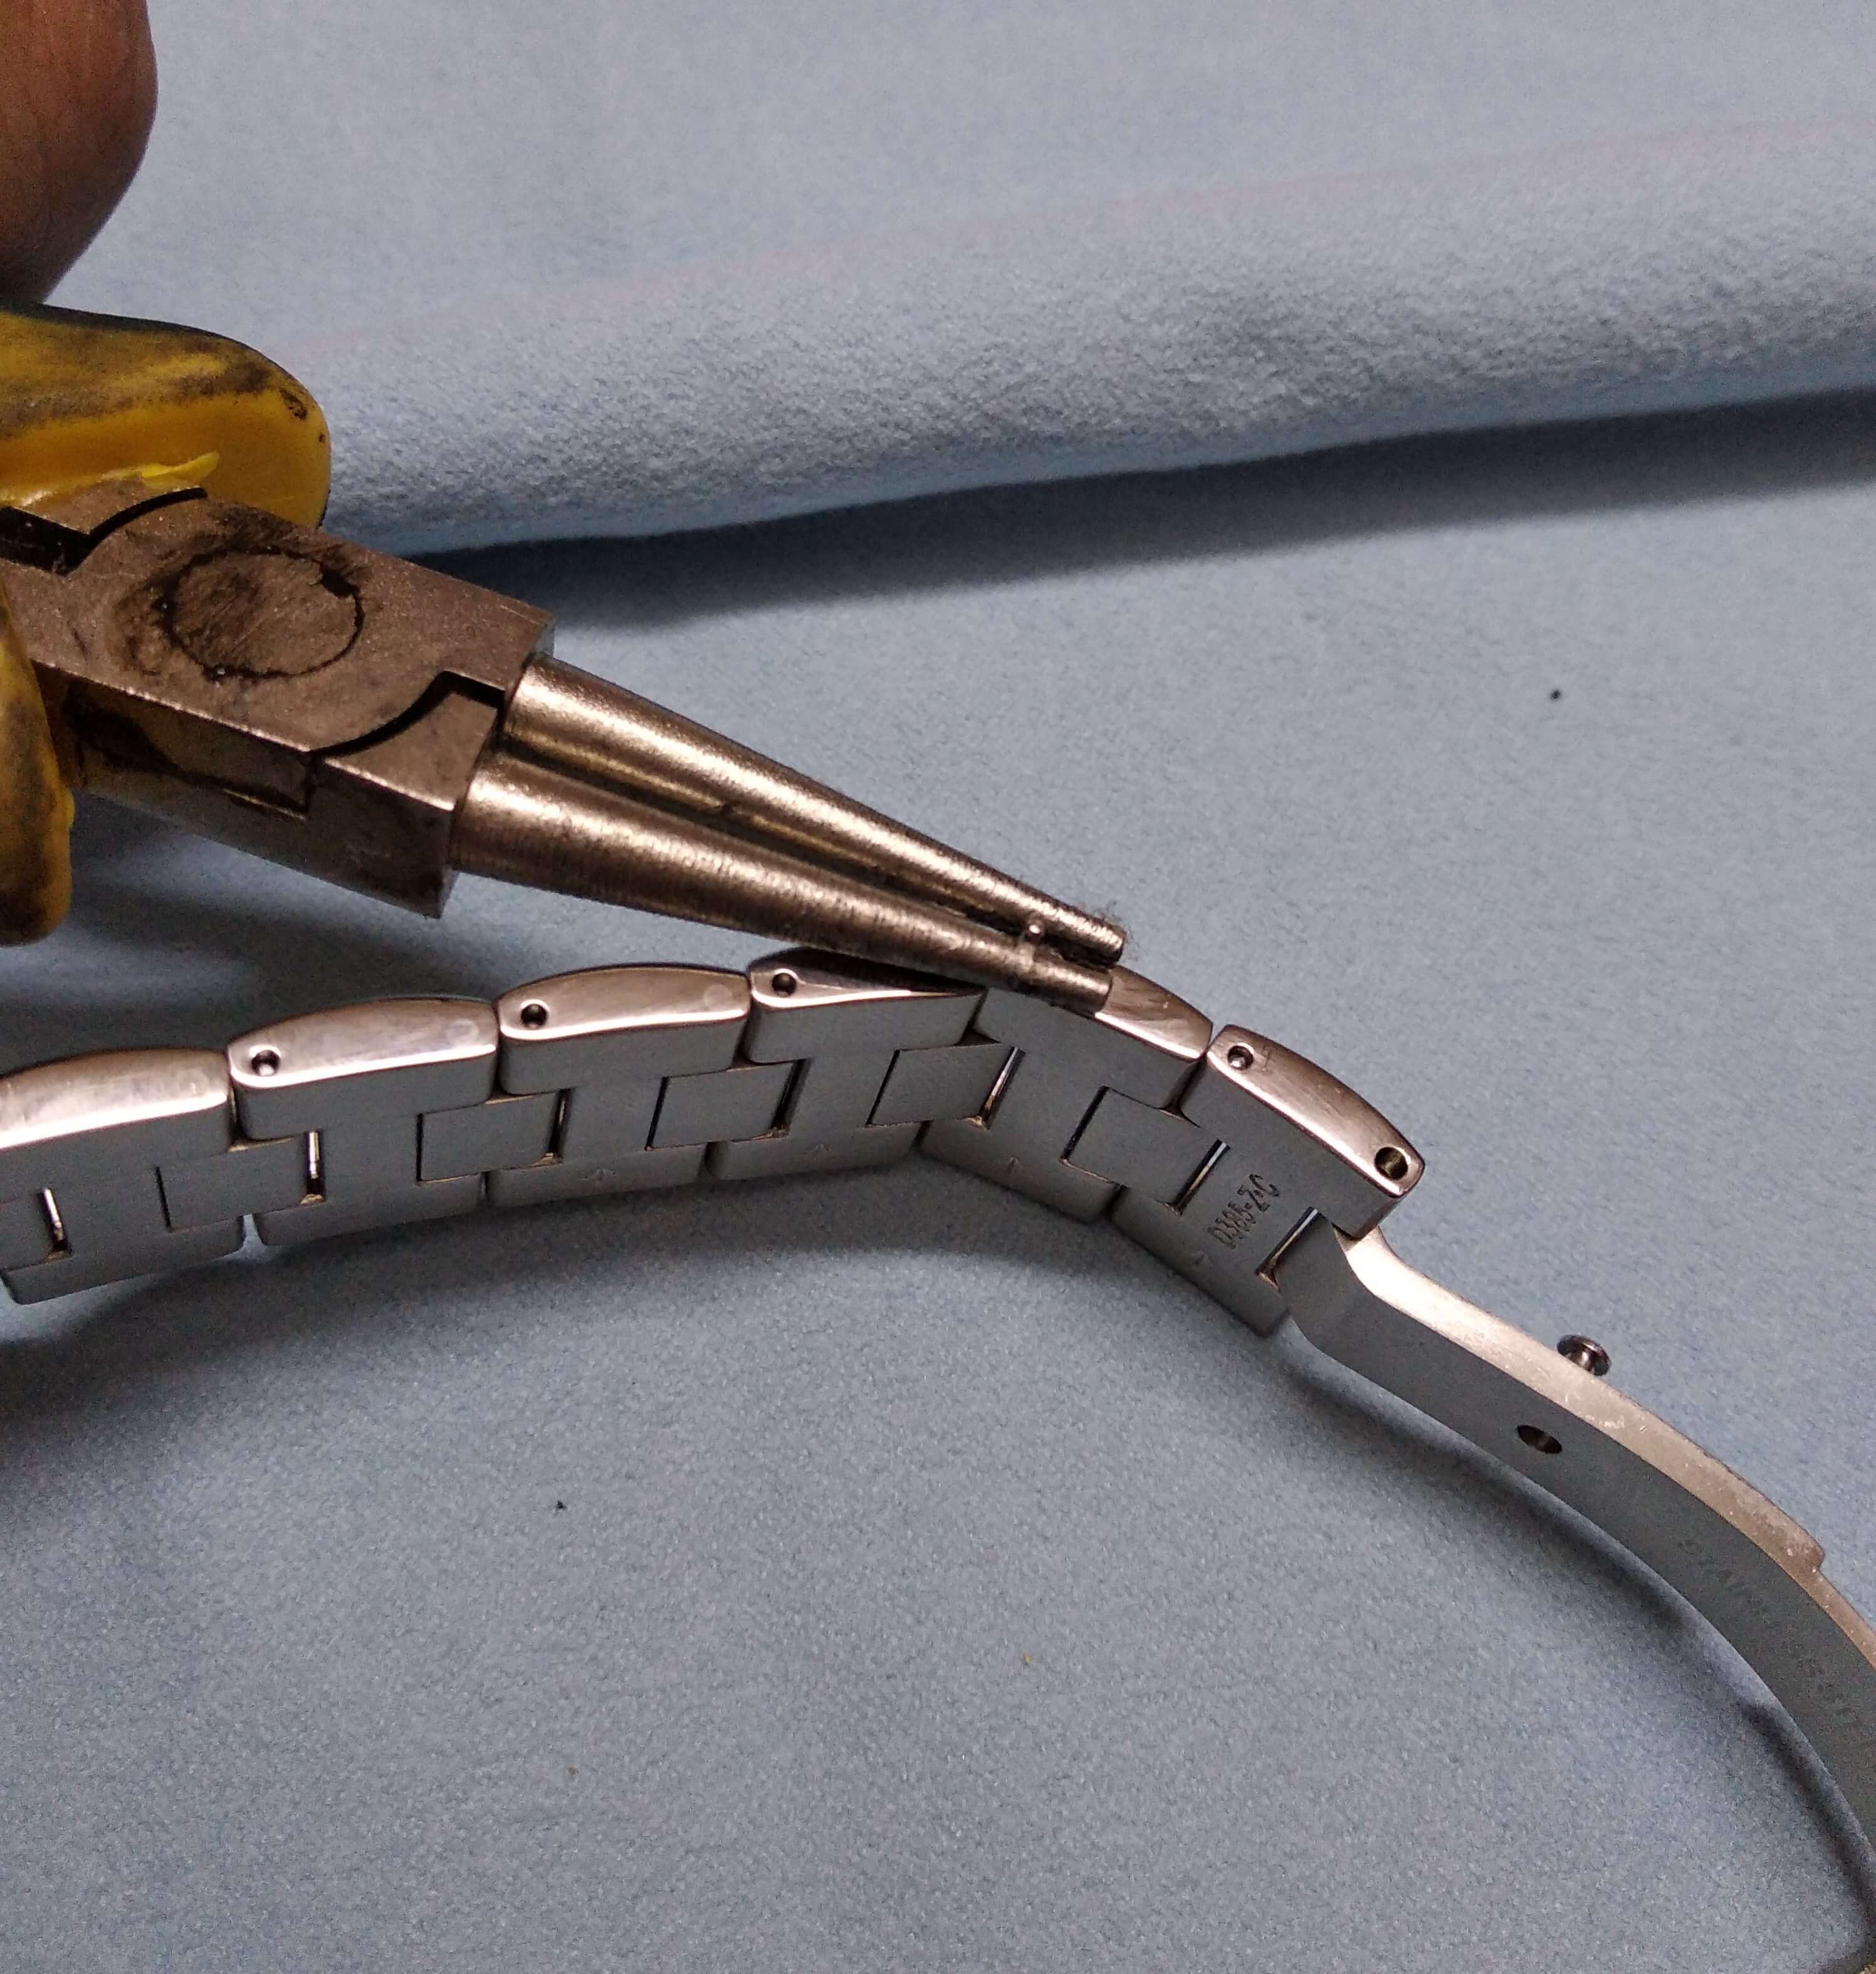 Seiko SARB033 resize bracelet plier